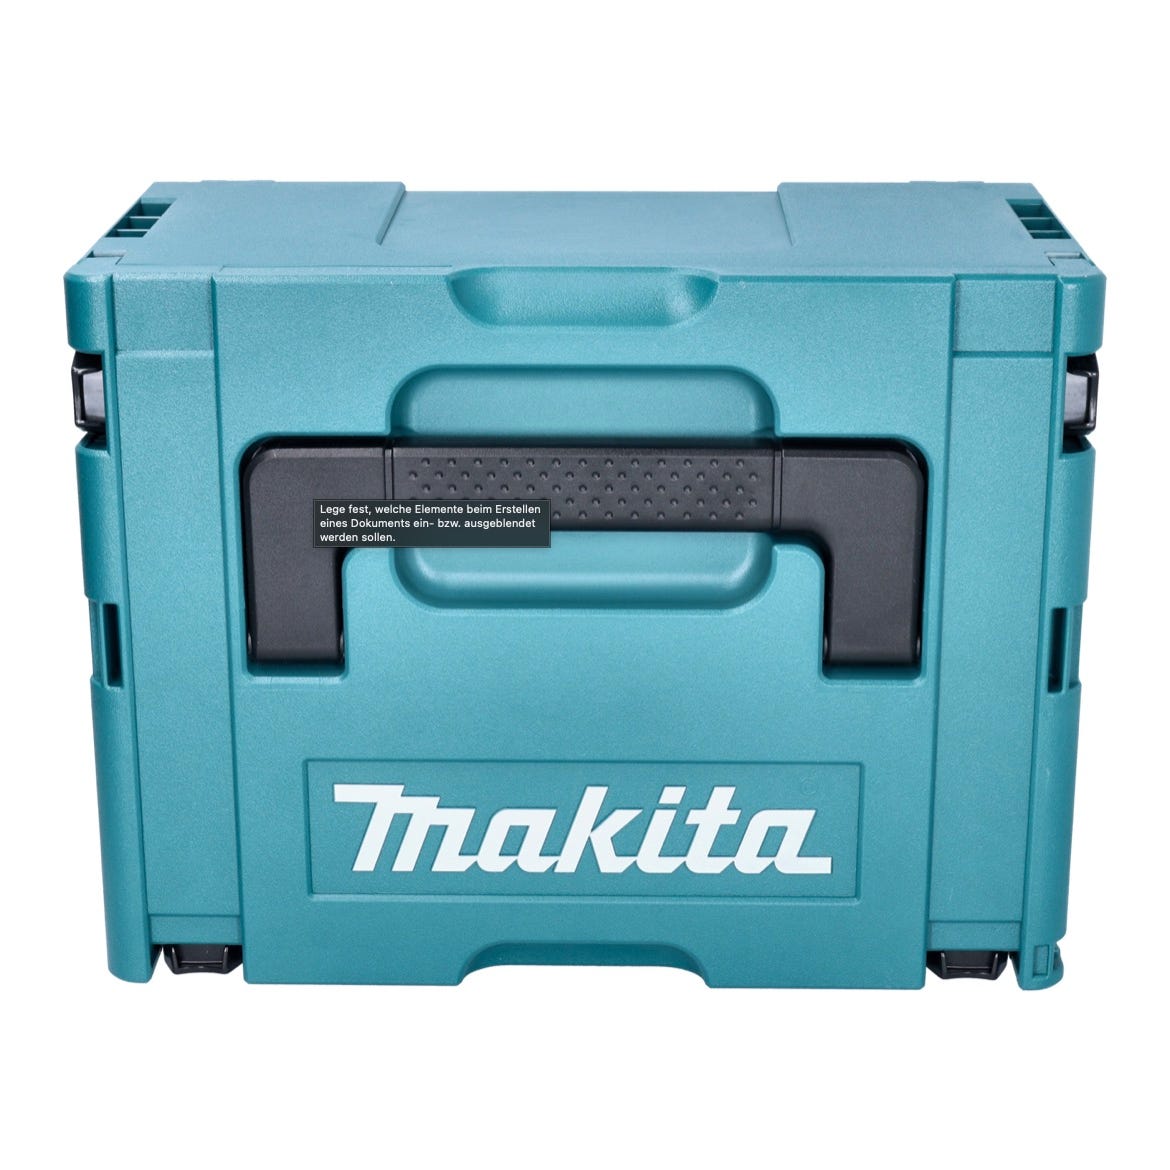 Makita DJV185ZJ Scie sauteuse sans fil 18V Brushless + Coffret Makpac - sans batterie, sans chargeur 2